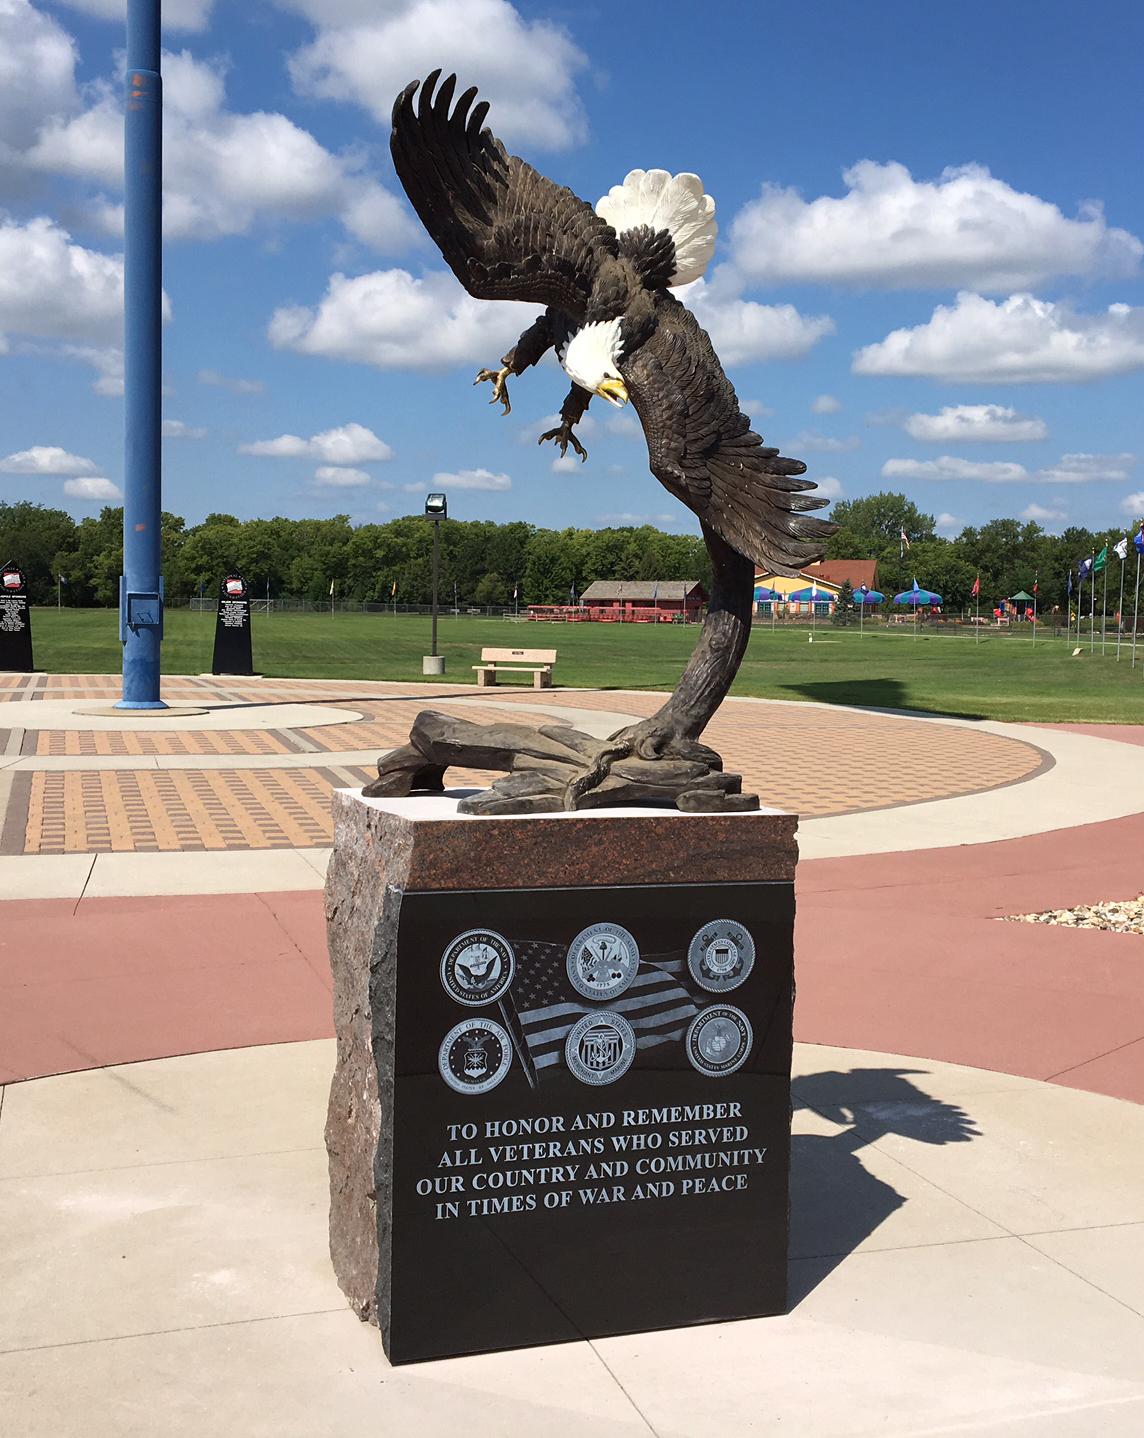 Nos statues d'aigle en bronze à cire perdue sont des ajouts étonnants à notre collection patriotique en bronze bien-aimée. Un aigle fait naturellement penser à la liberté et au patriotisme en raison de son lien avec notre pays et nos soldats. Notre